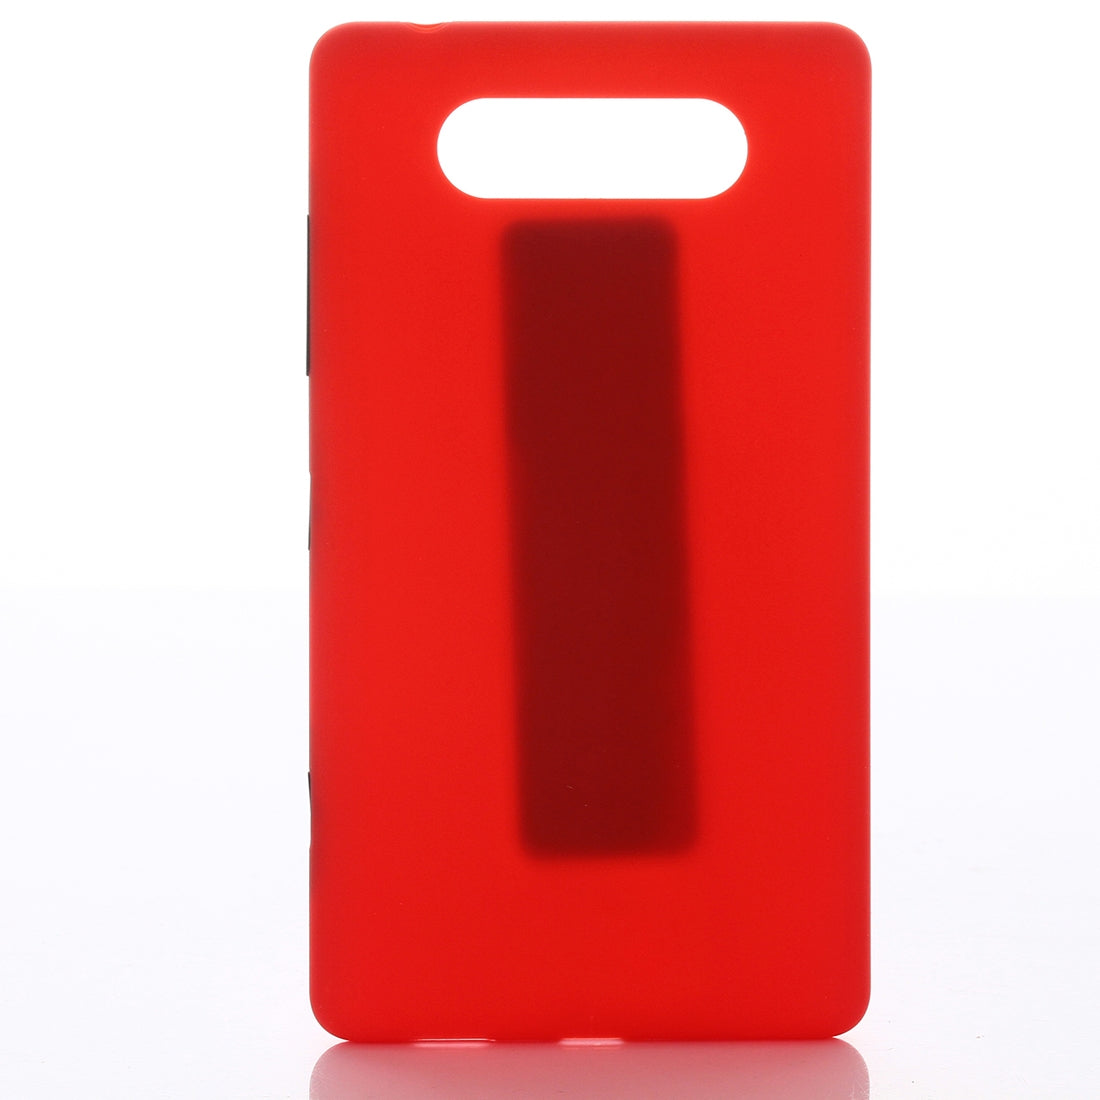 Cache Batterie Coque Arrière Nokia Lumia 820 Rouge